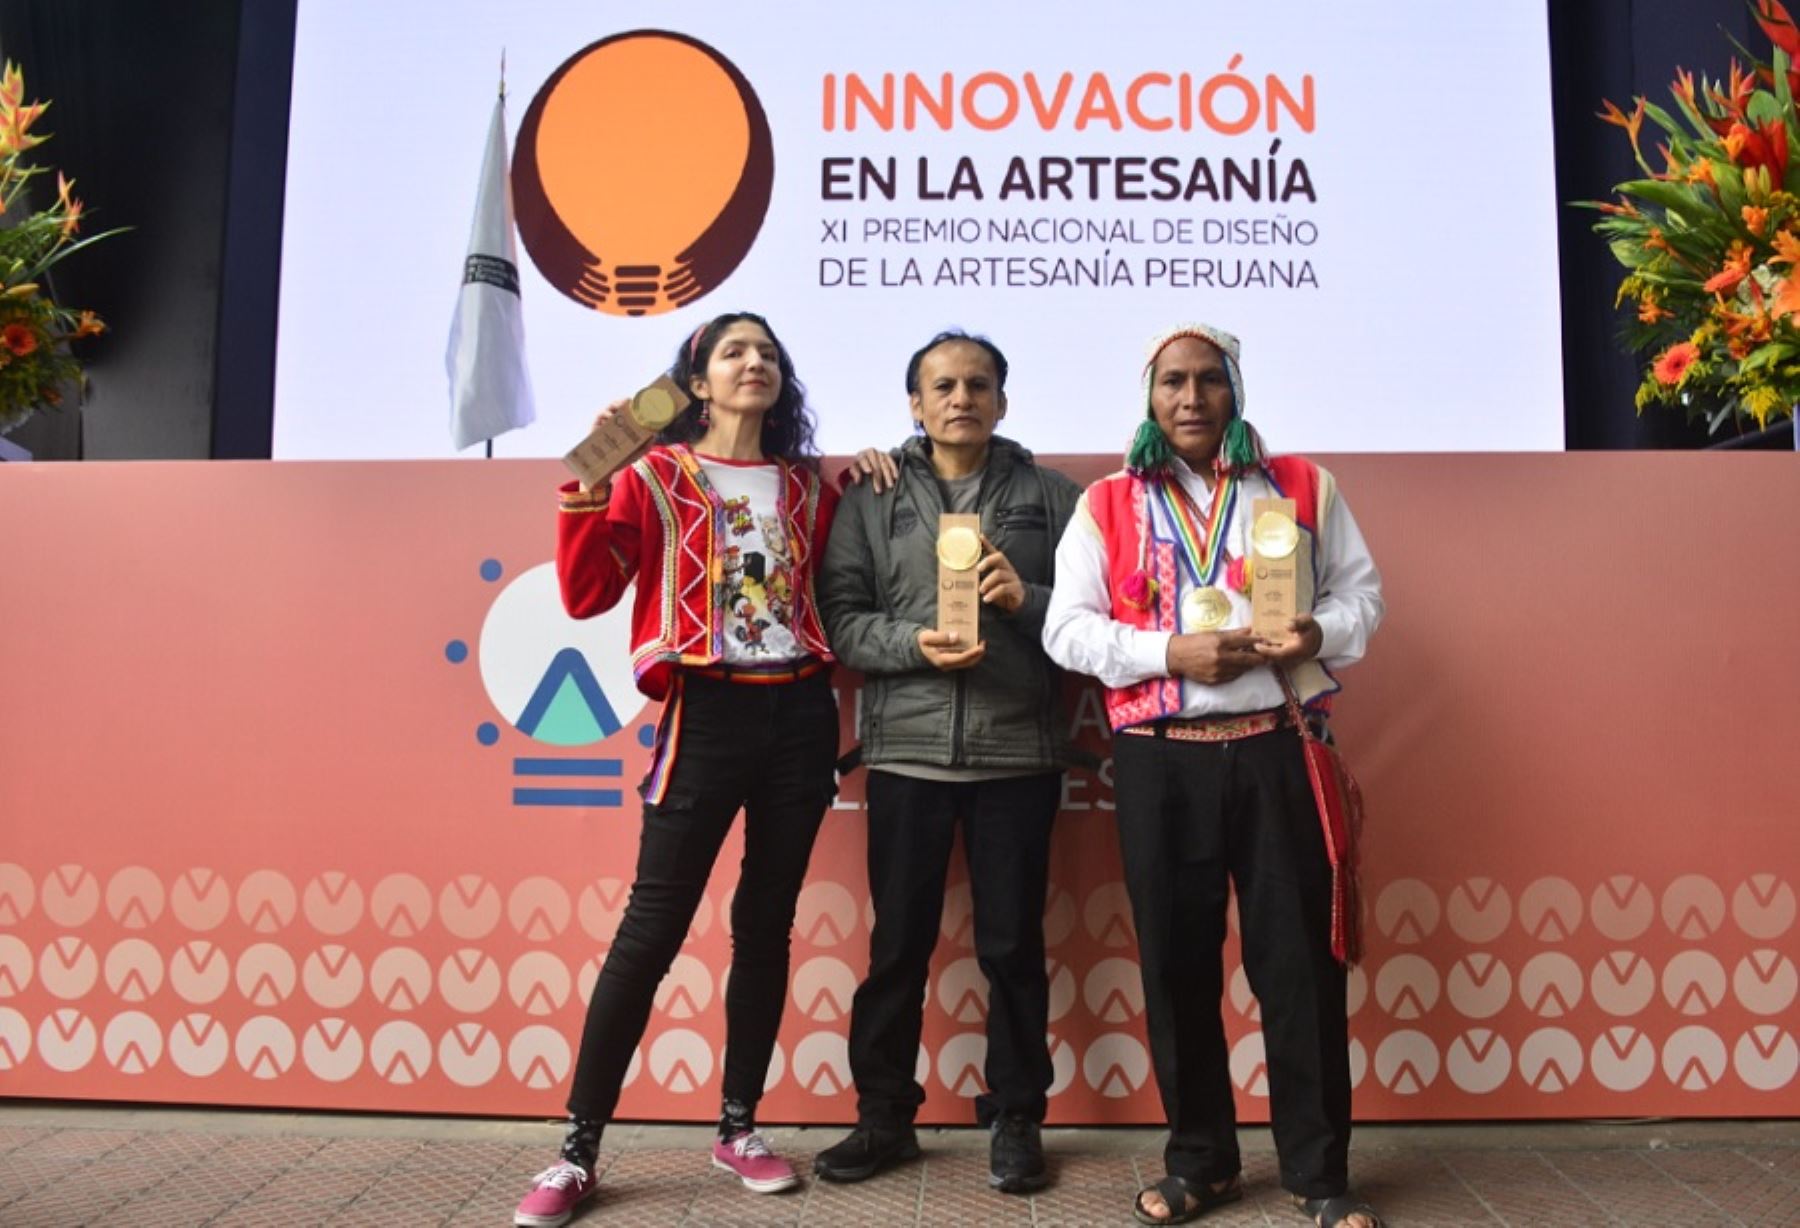 El Ministerio de Comercio Exterior y Turismo  presentó a los tres ganadores de la XI edición del Premio Nacional de Diseño de la Artesanía Peruana, importante concurso que distingue el diseño como 
factor crítico y relevante en los procesos de innovación y en los procesos creativos para impulsar la competitividad en el sector artesanal.